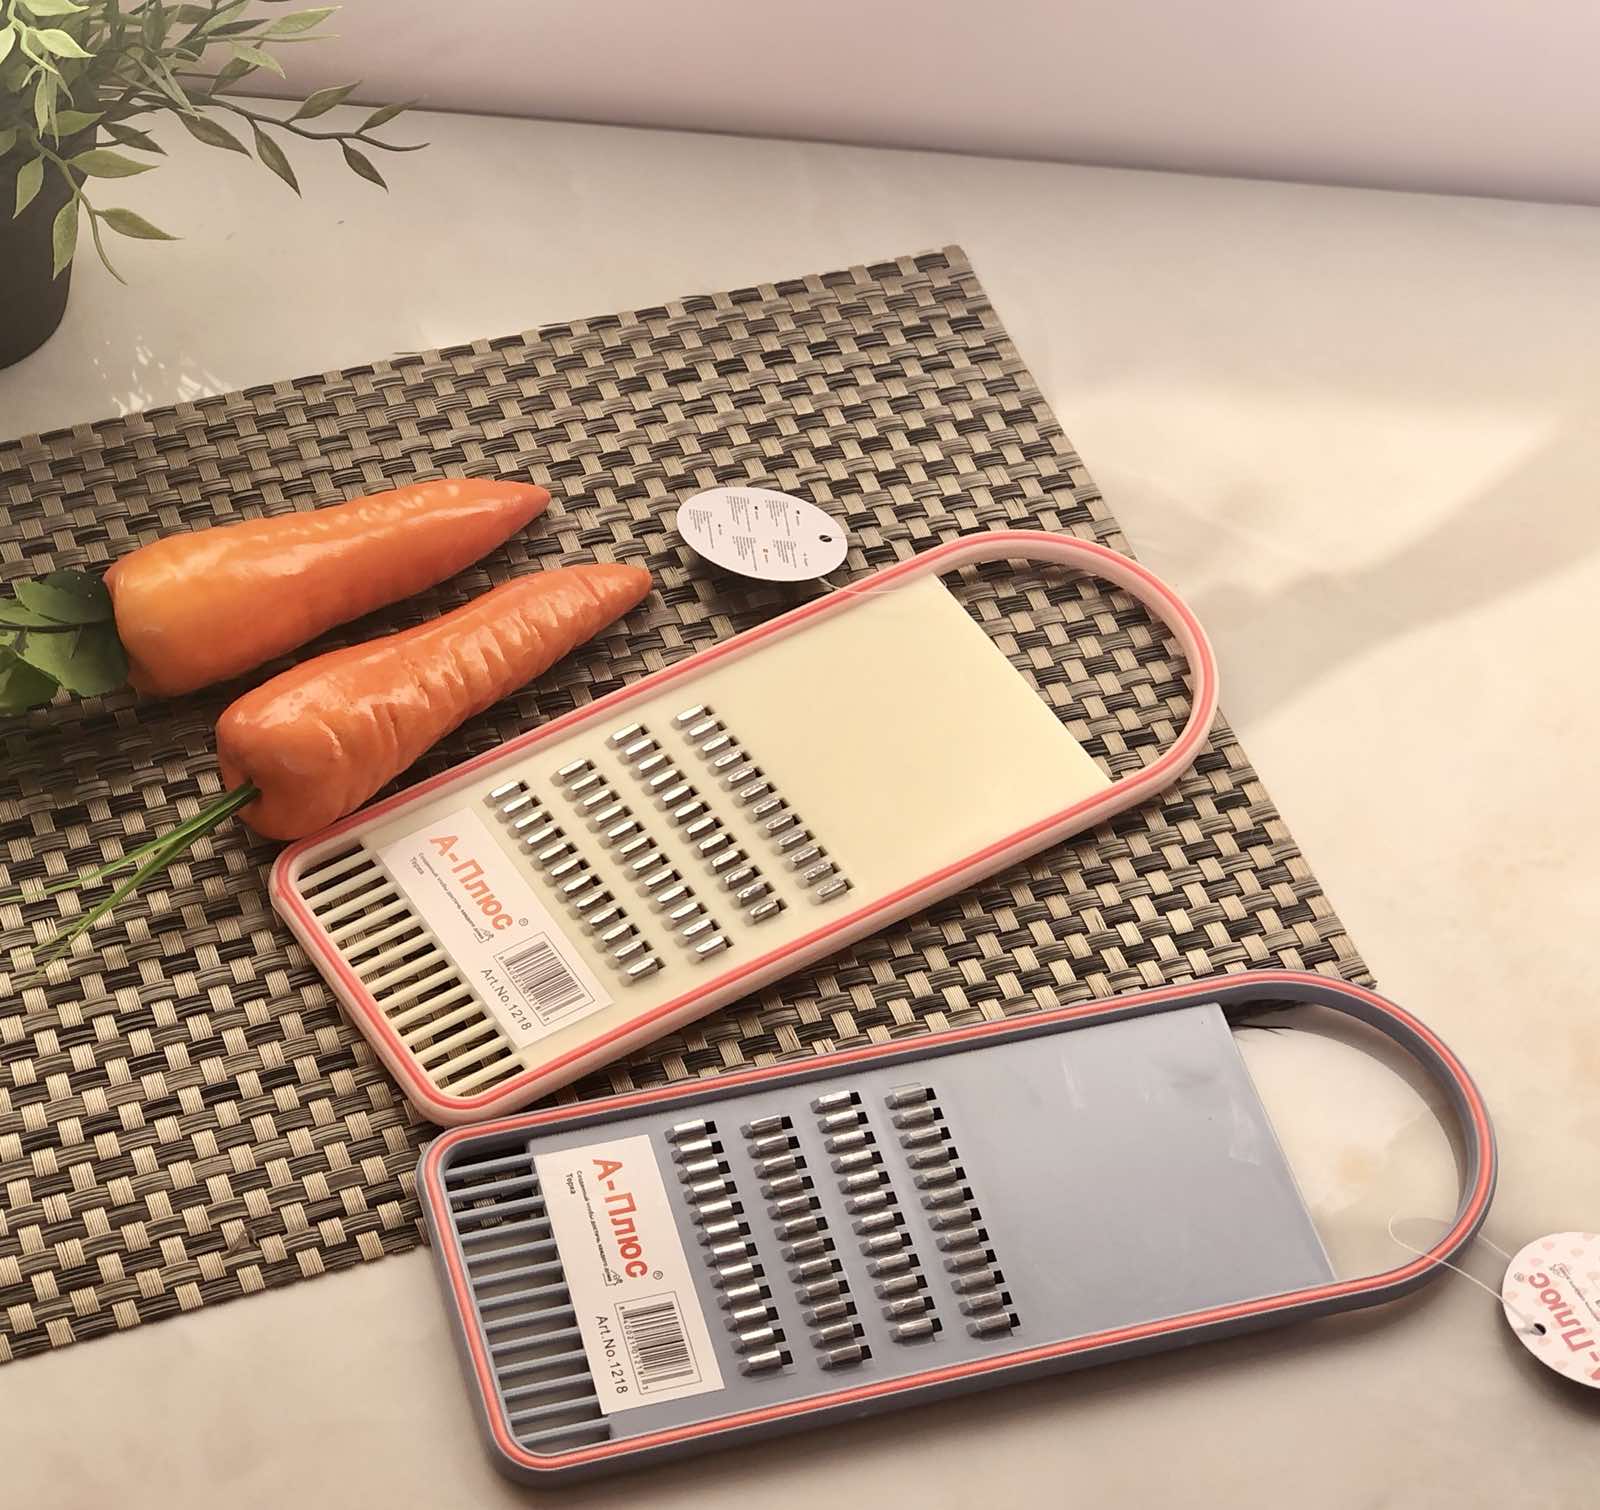 Терка для корейской моркови 1218 ✅ базовая цена $0.83 ✔ Опт ✔ Скидки ✔ Заходите! - Интернет-магазин ✅ Фортуна-опт ✅